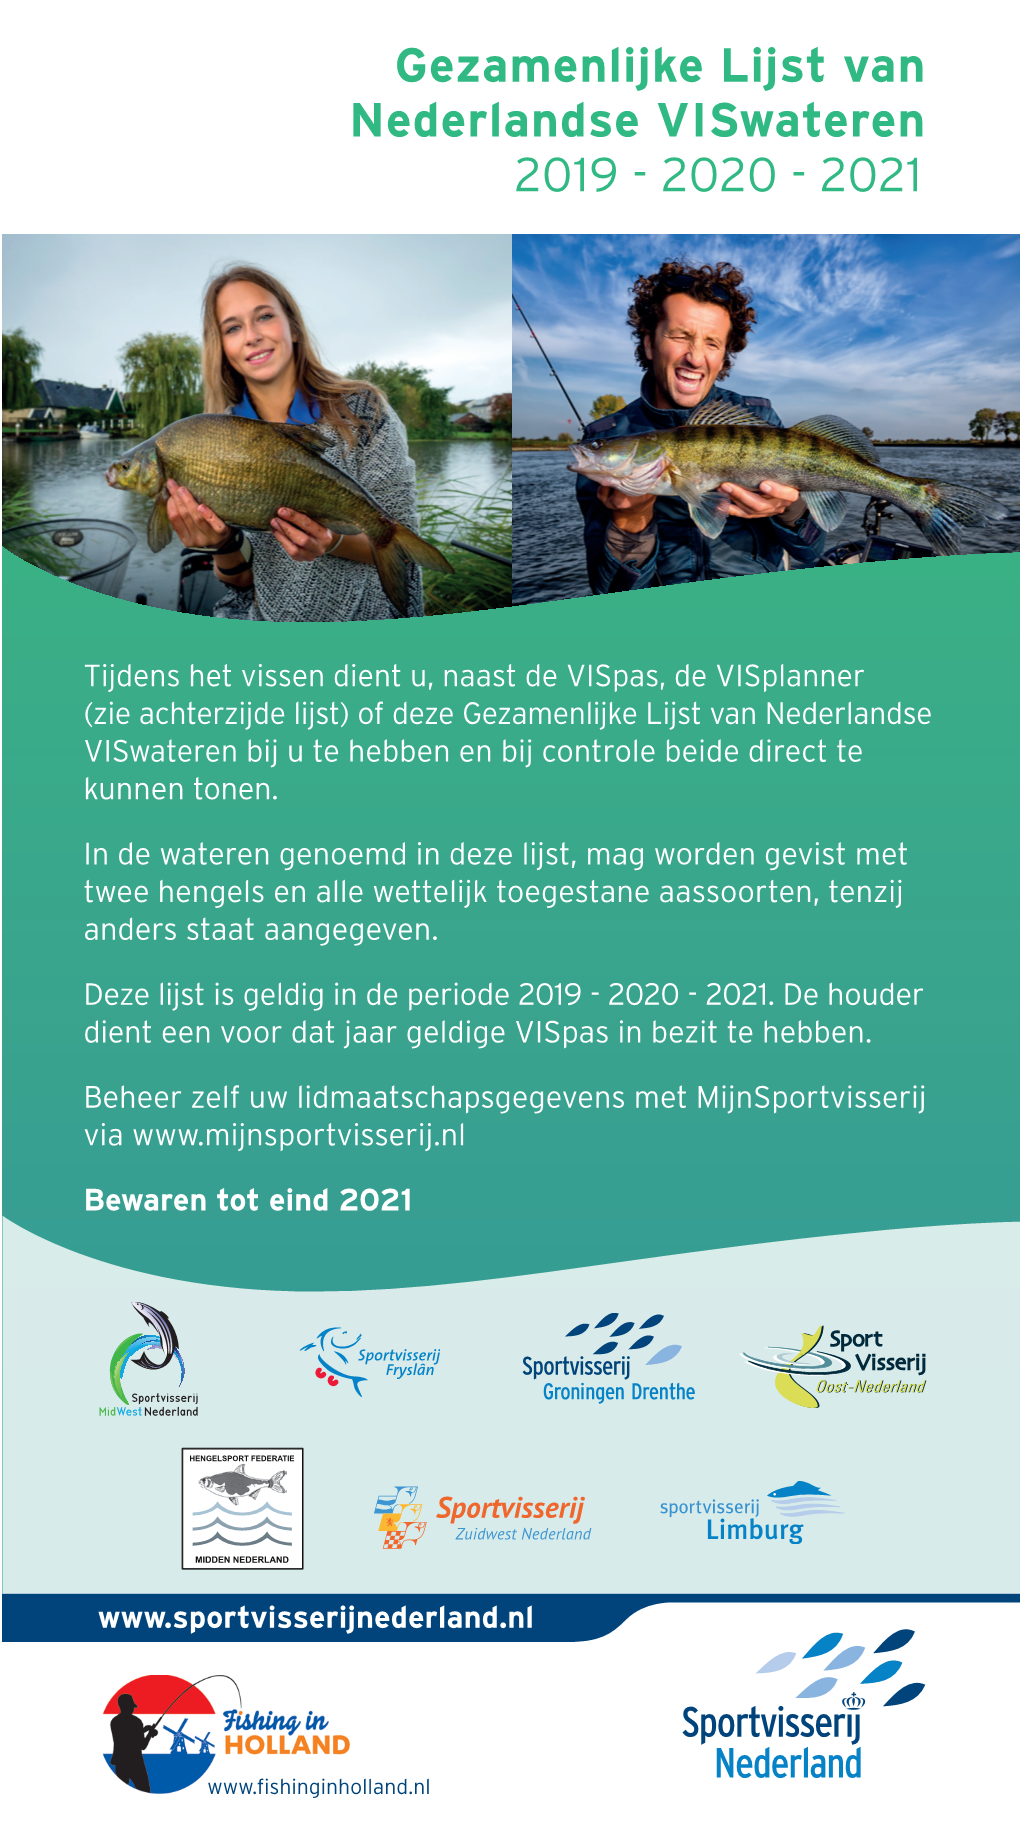 Gezamenlijke Lijst Van Viswateren 2019 T/M 2021